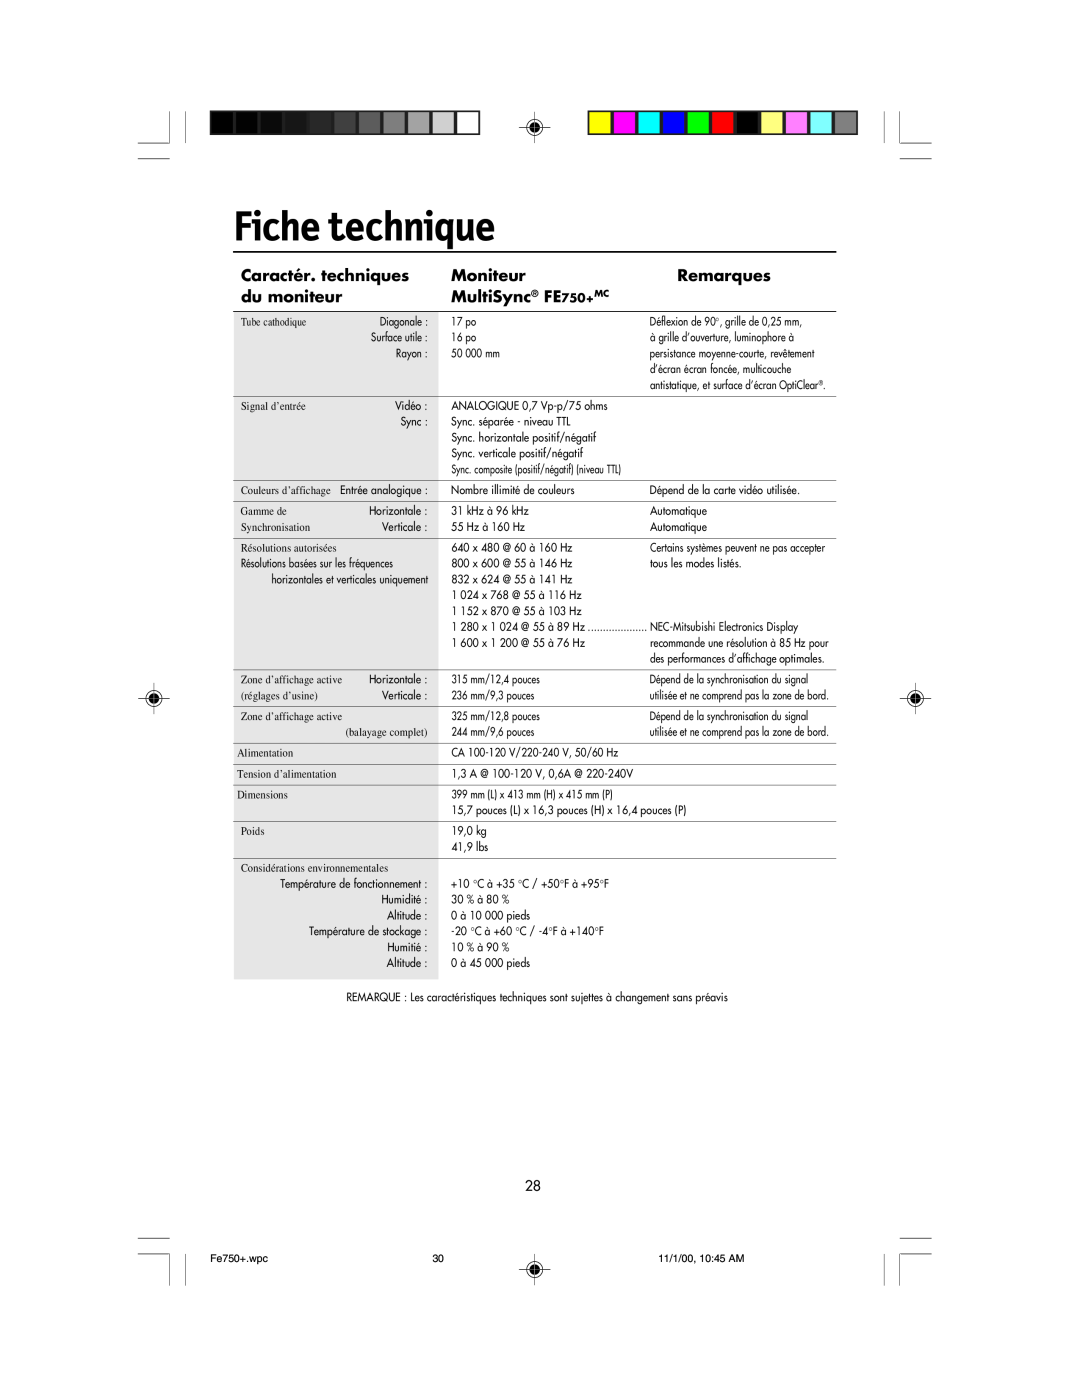 NEC FE750 Plus user manual Fiche technique, Caractér. techniques, Moniteur, Remarques, du moniteur, MultiSync FE750+MC 